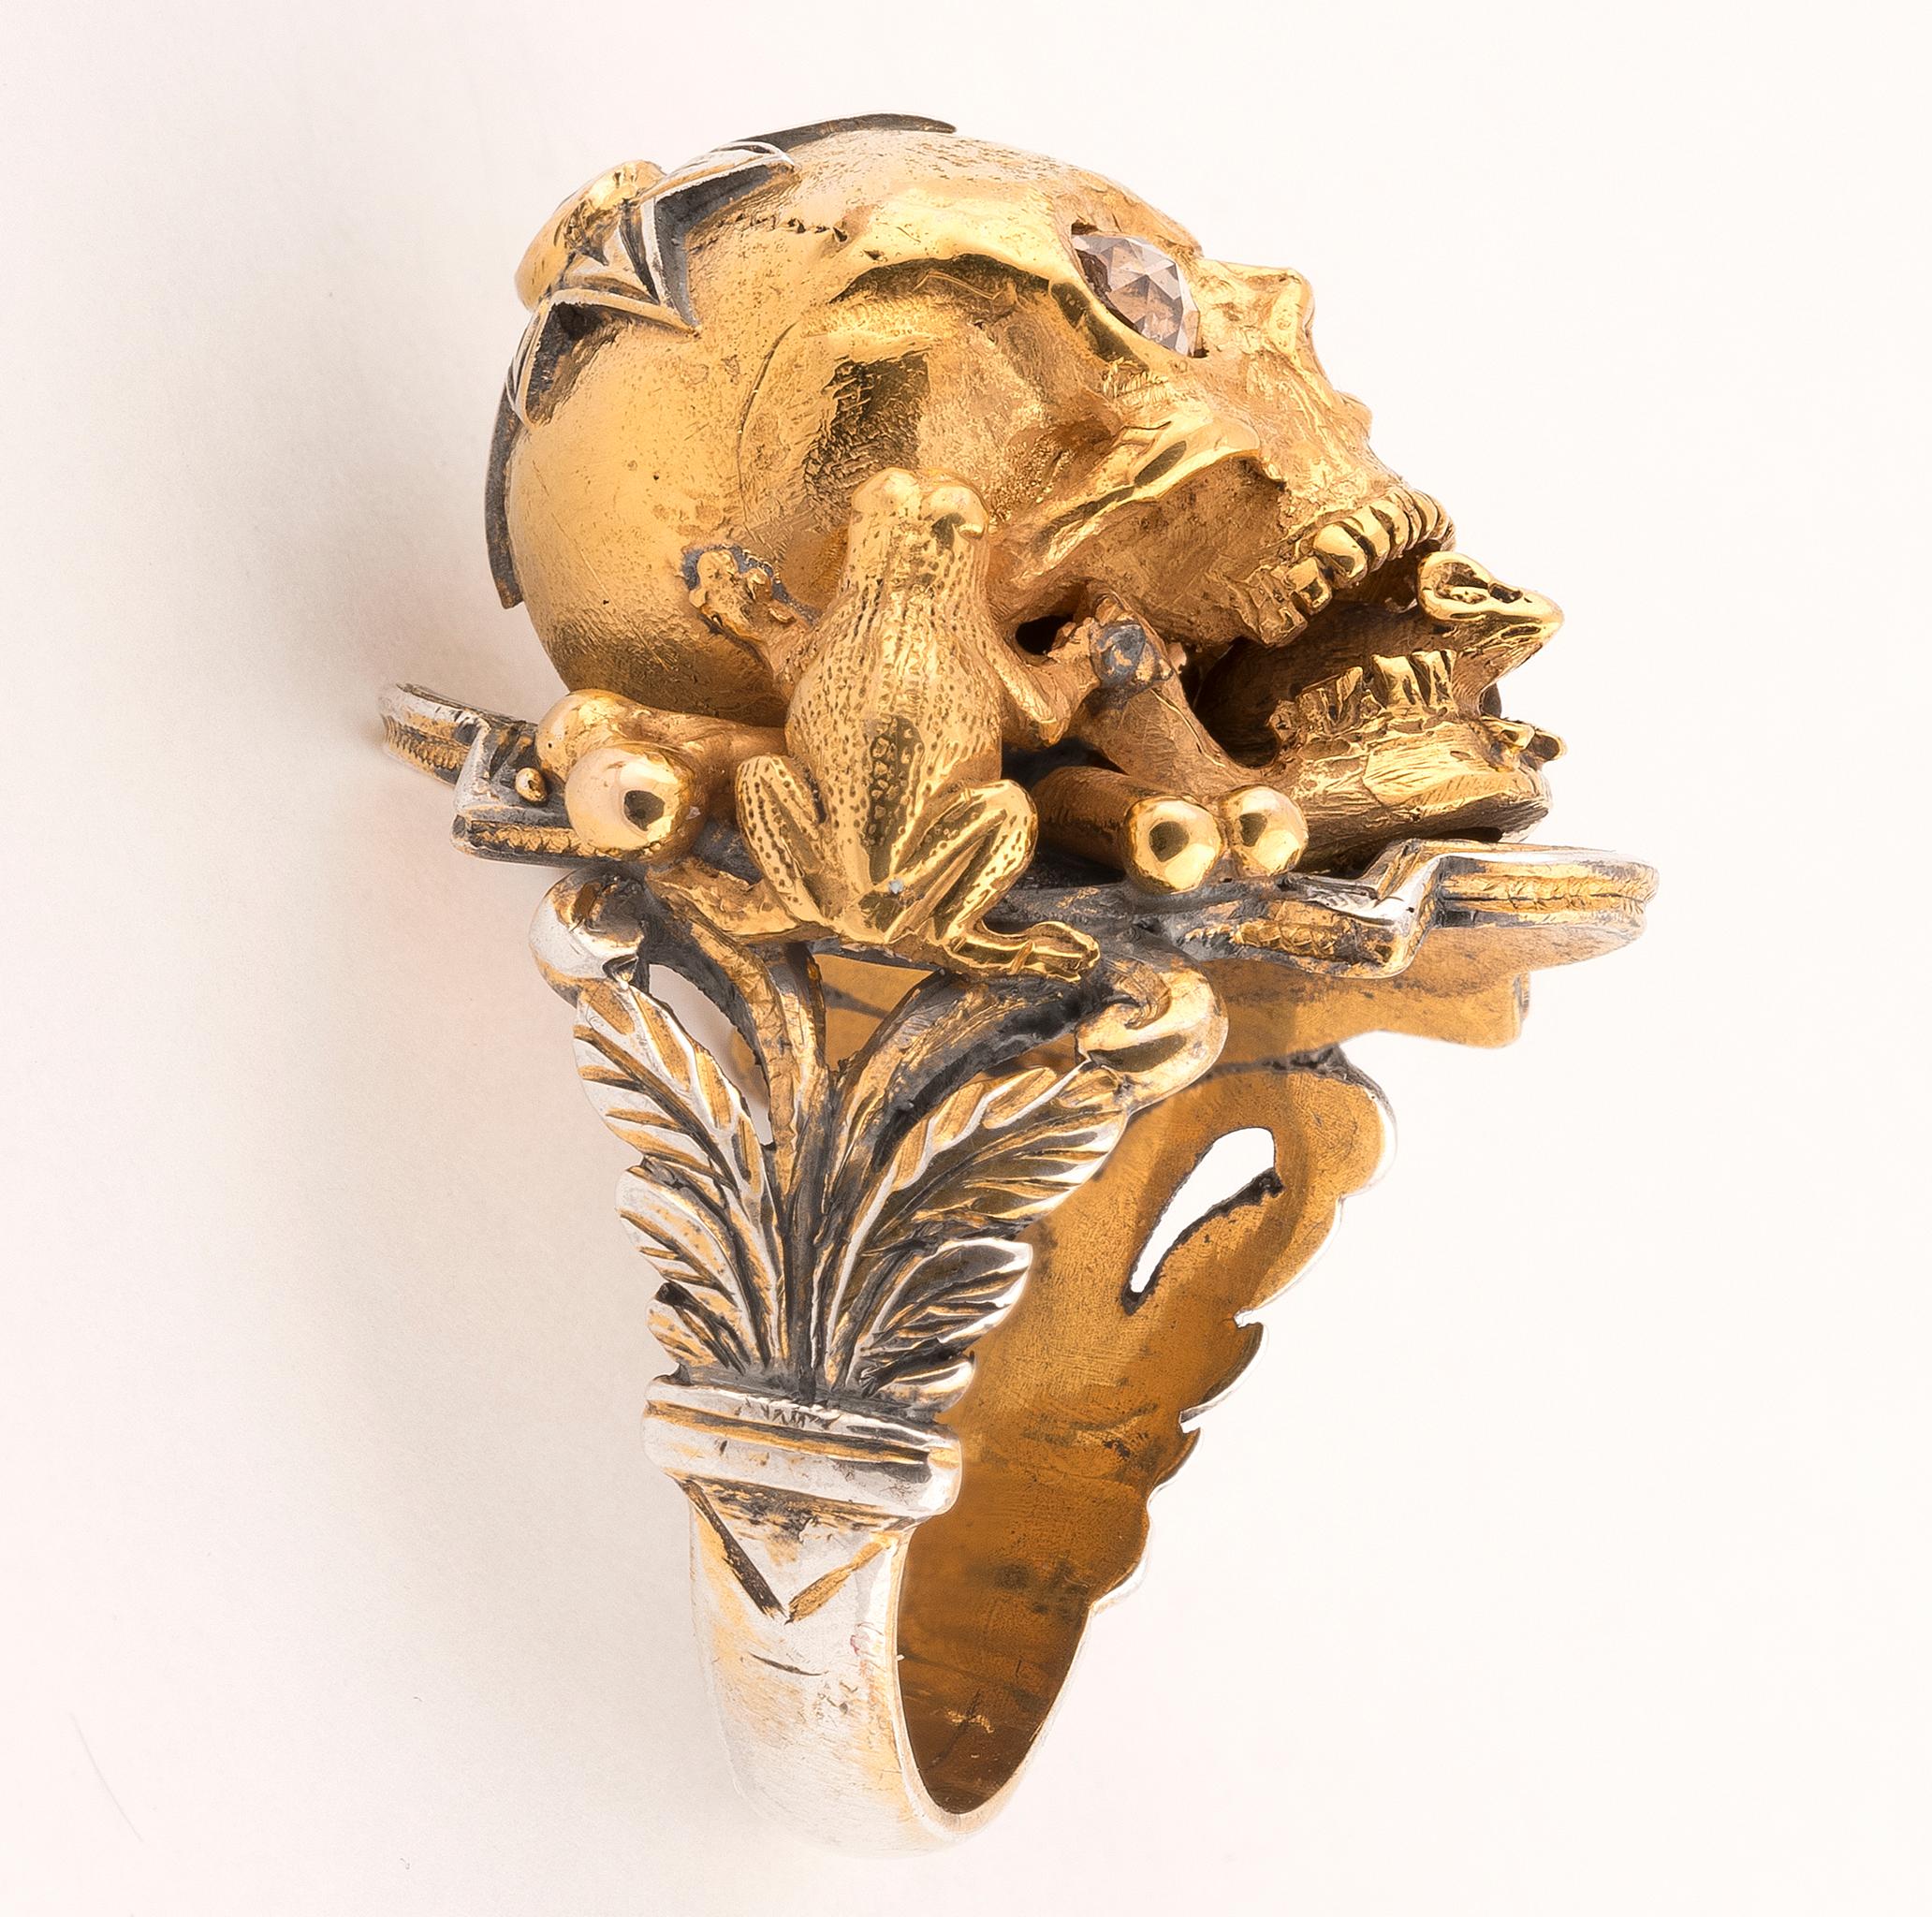 Bernardo Large Gold Silver Diamond Skull Ring (Zeitgenössisch)